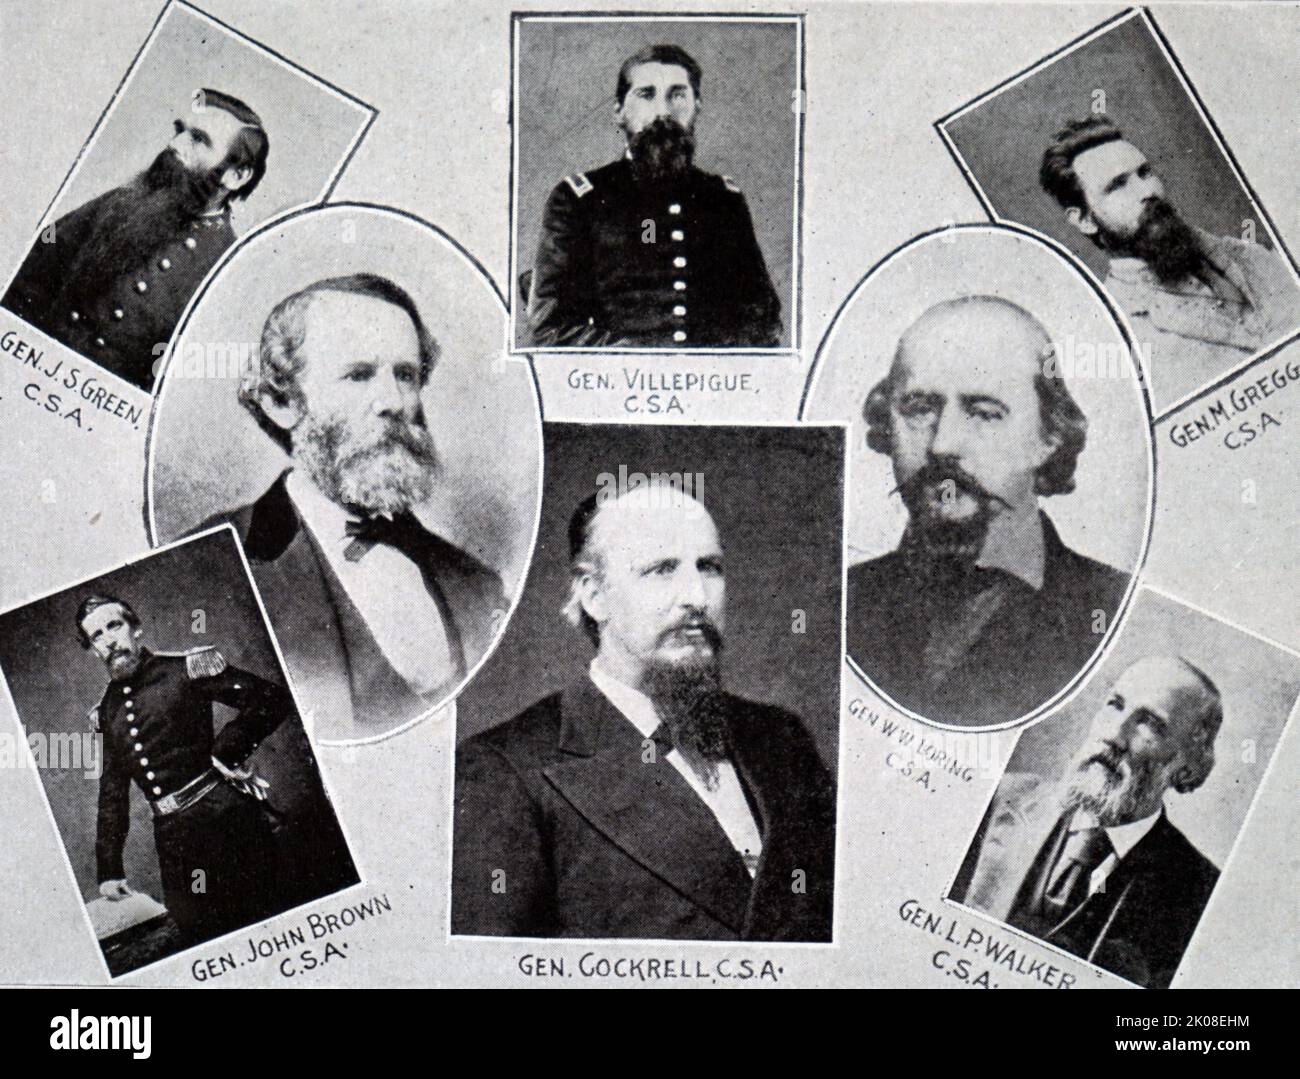 Gruppo di generali confederati nella guerra civile americana. La guerra civile americana (12 aprile 1861 – 9 maggio 1865) è stata una guerra civile negli Stati Uniti tra l'Unione e gli stati confederati Foto Stock